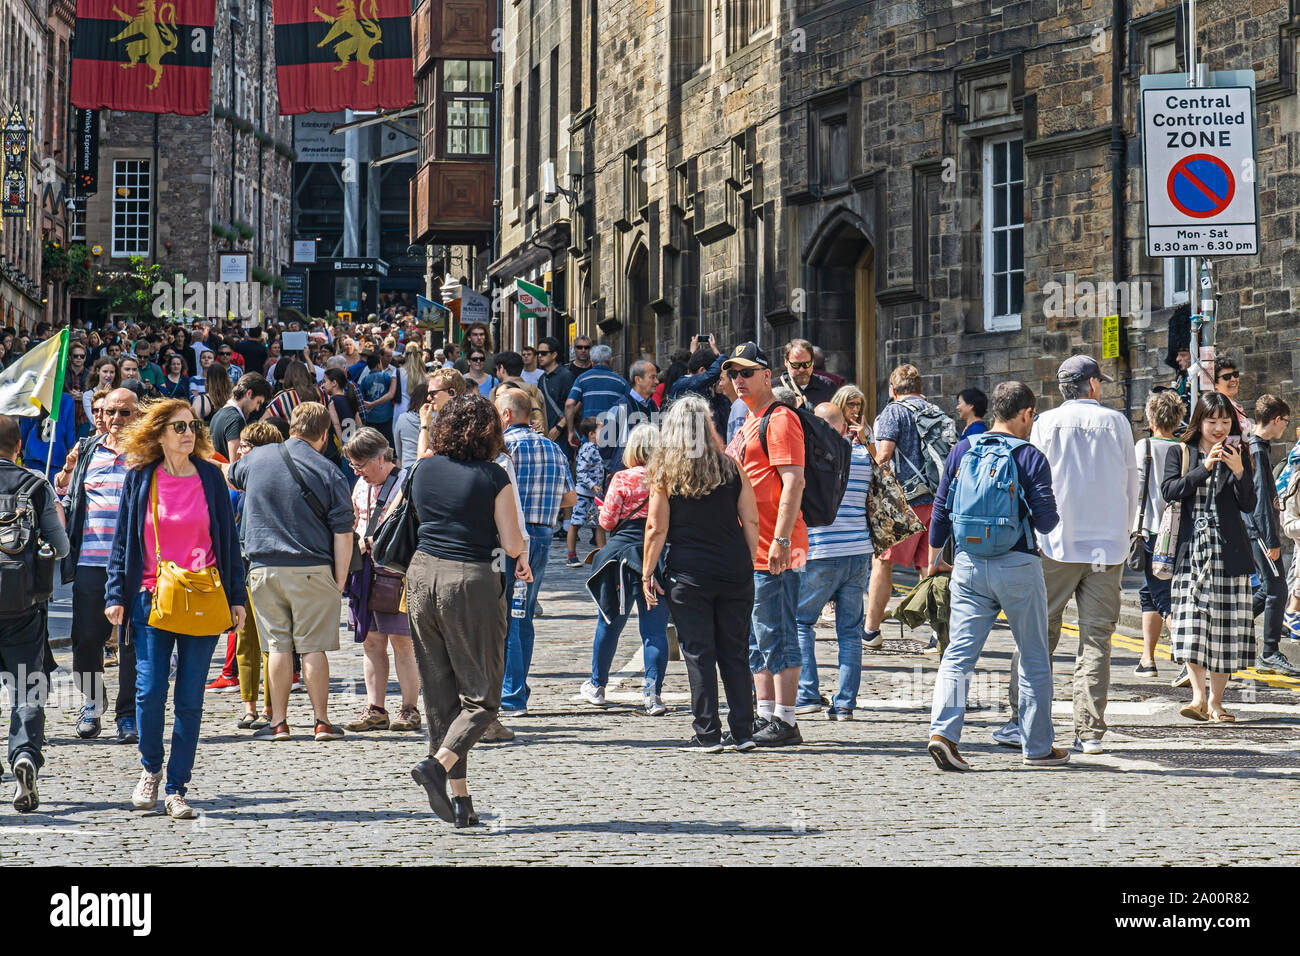 Les visiteurs de la congestion dans la région de Castle Street menant au château d'Édimbourg en Écosse Royaume-uni pendant les festivals en août 2019 Banque D'Images